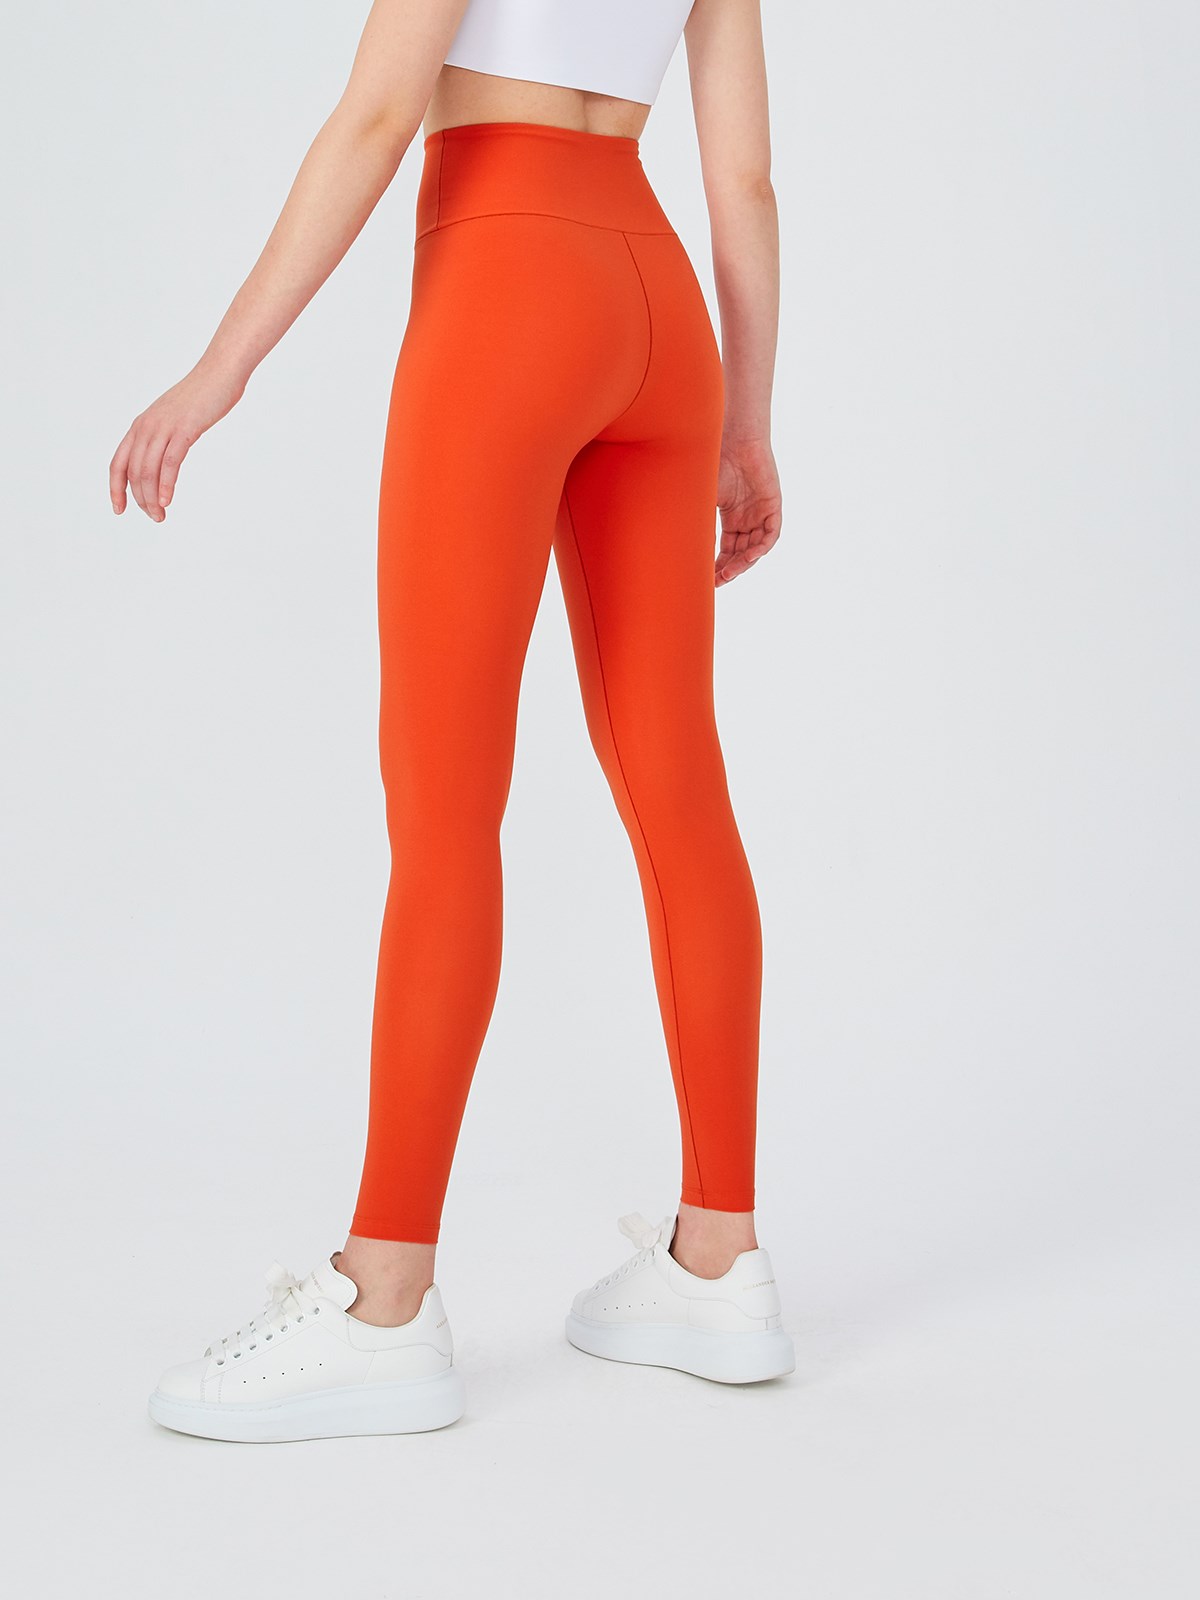 Orange Leggings: Shop up to −83%